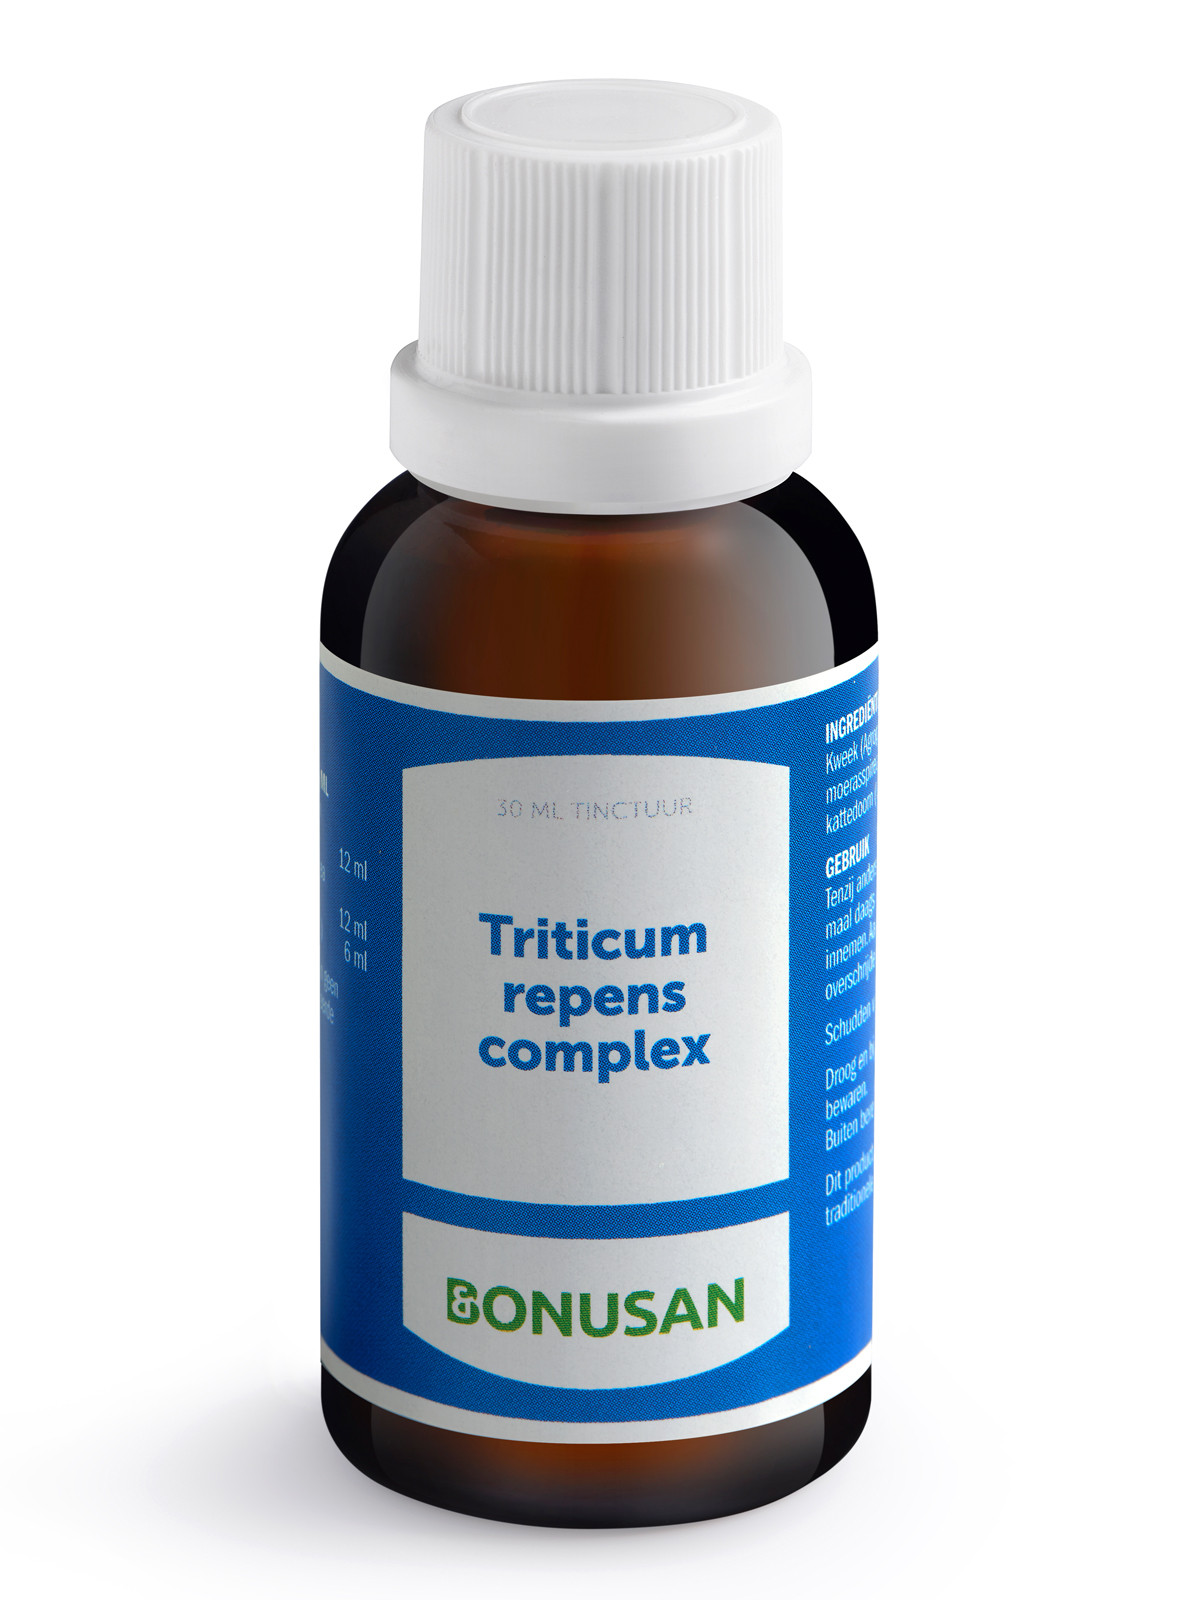 Triticum repens complex